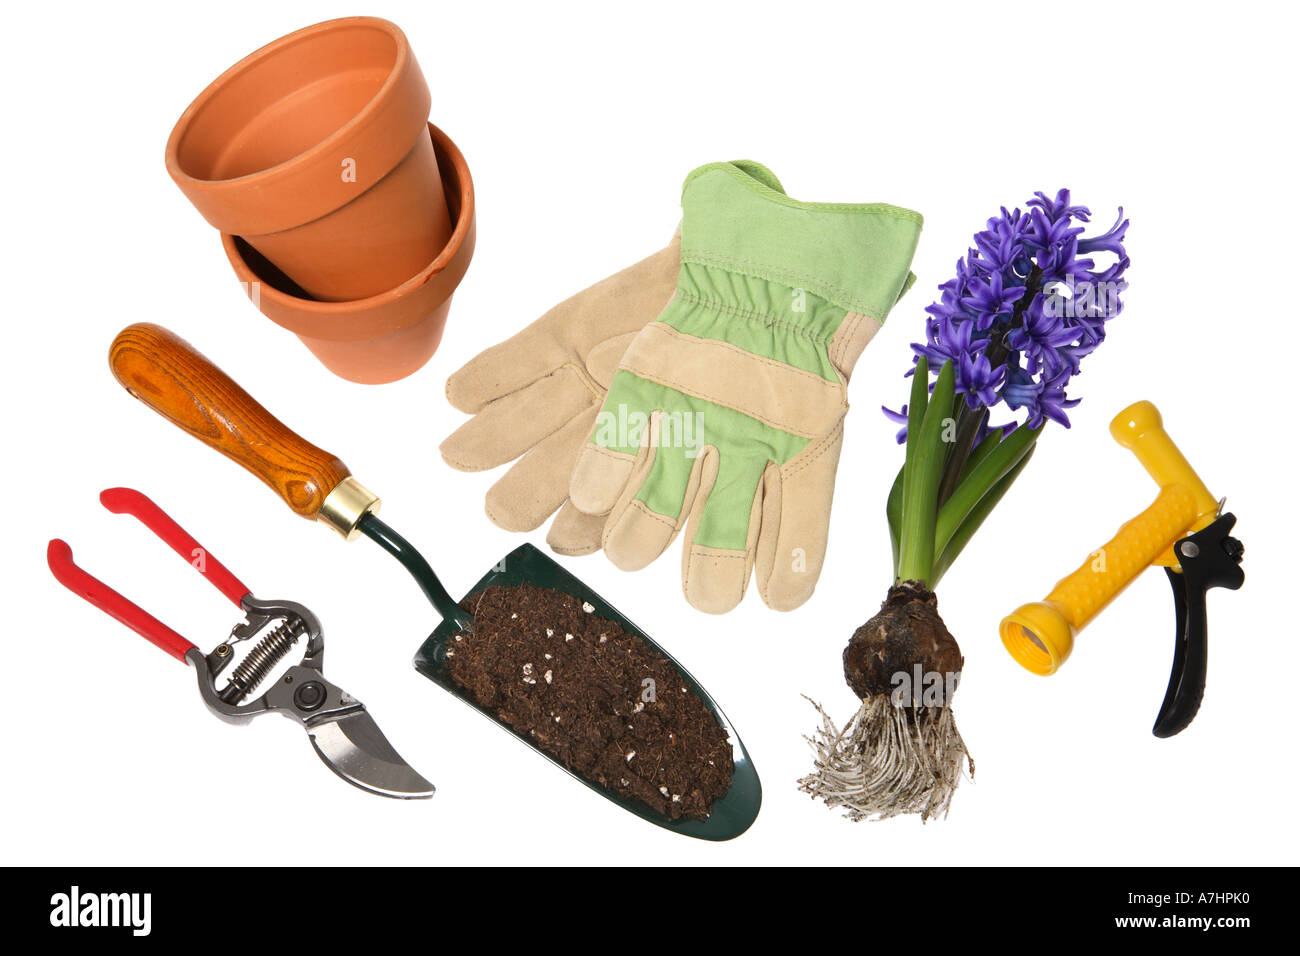 Gartenarbeit-Objekte: Baumscheren, Schaufel mit Blumenerde, Terrakotta Töpfe, Gartenhandschuhe, Hyazinthe Zwiebeln und Sprühdüse Stockfoto